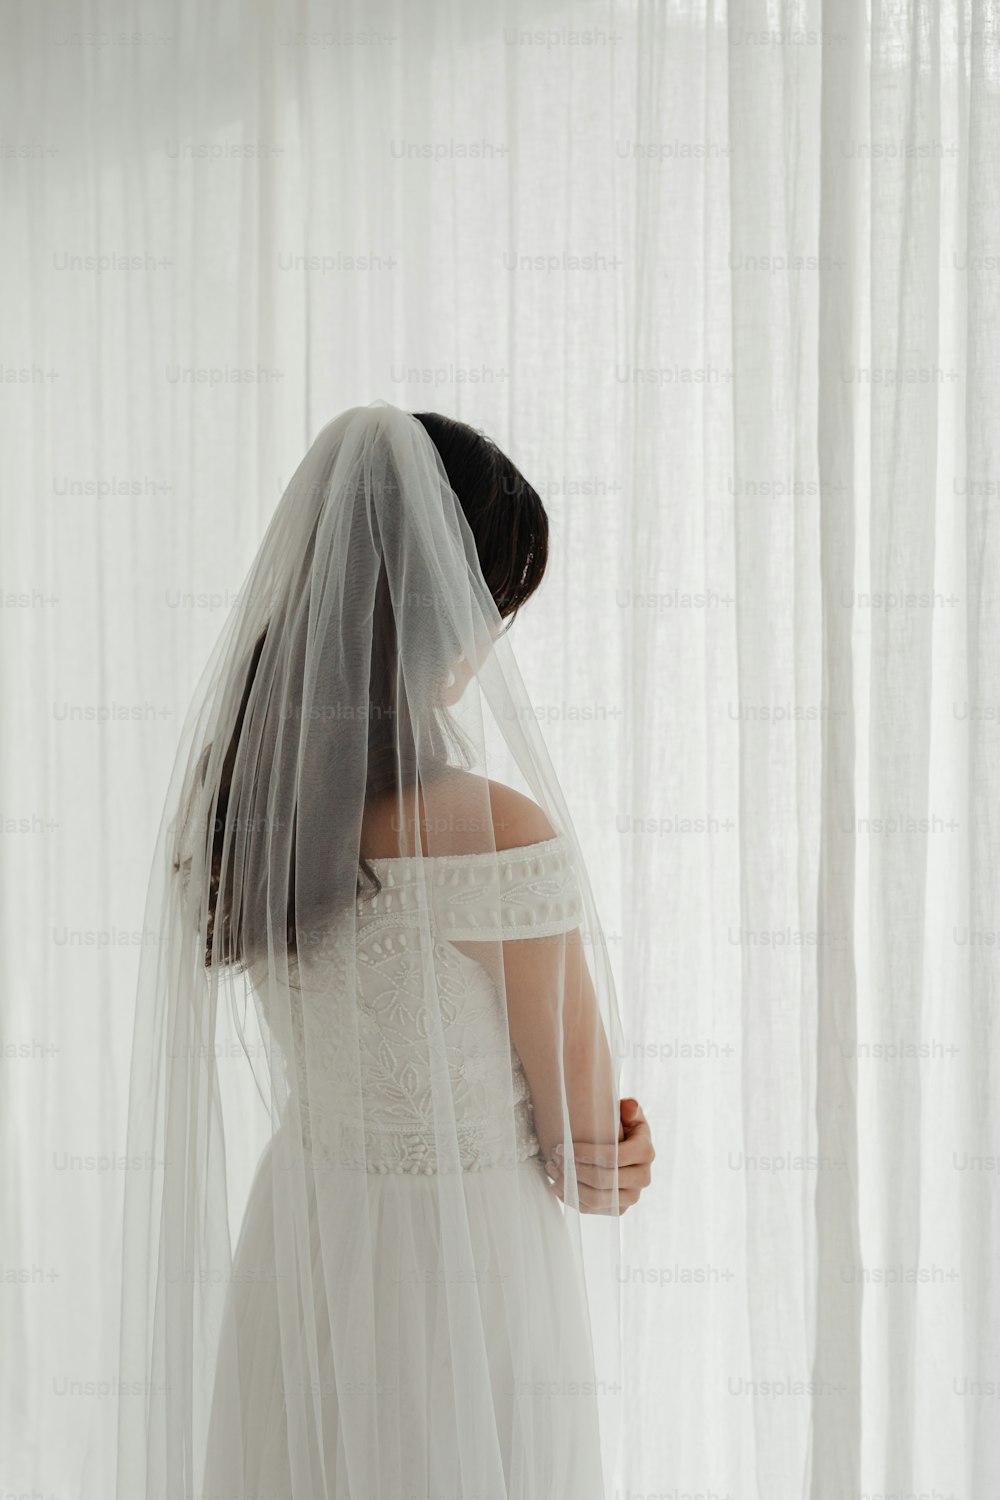 uma mulher em um vestido de noiva e véu